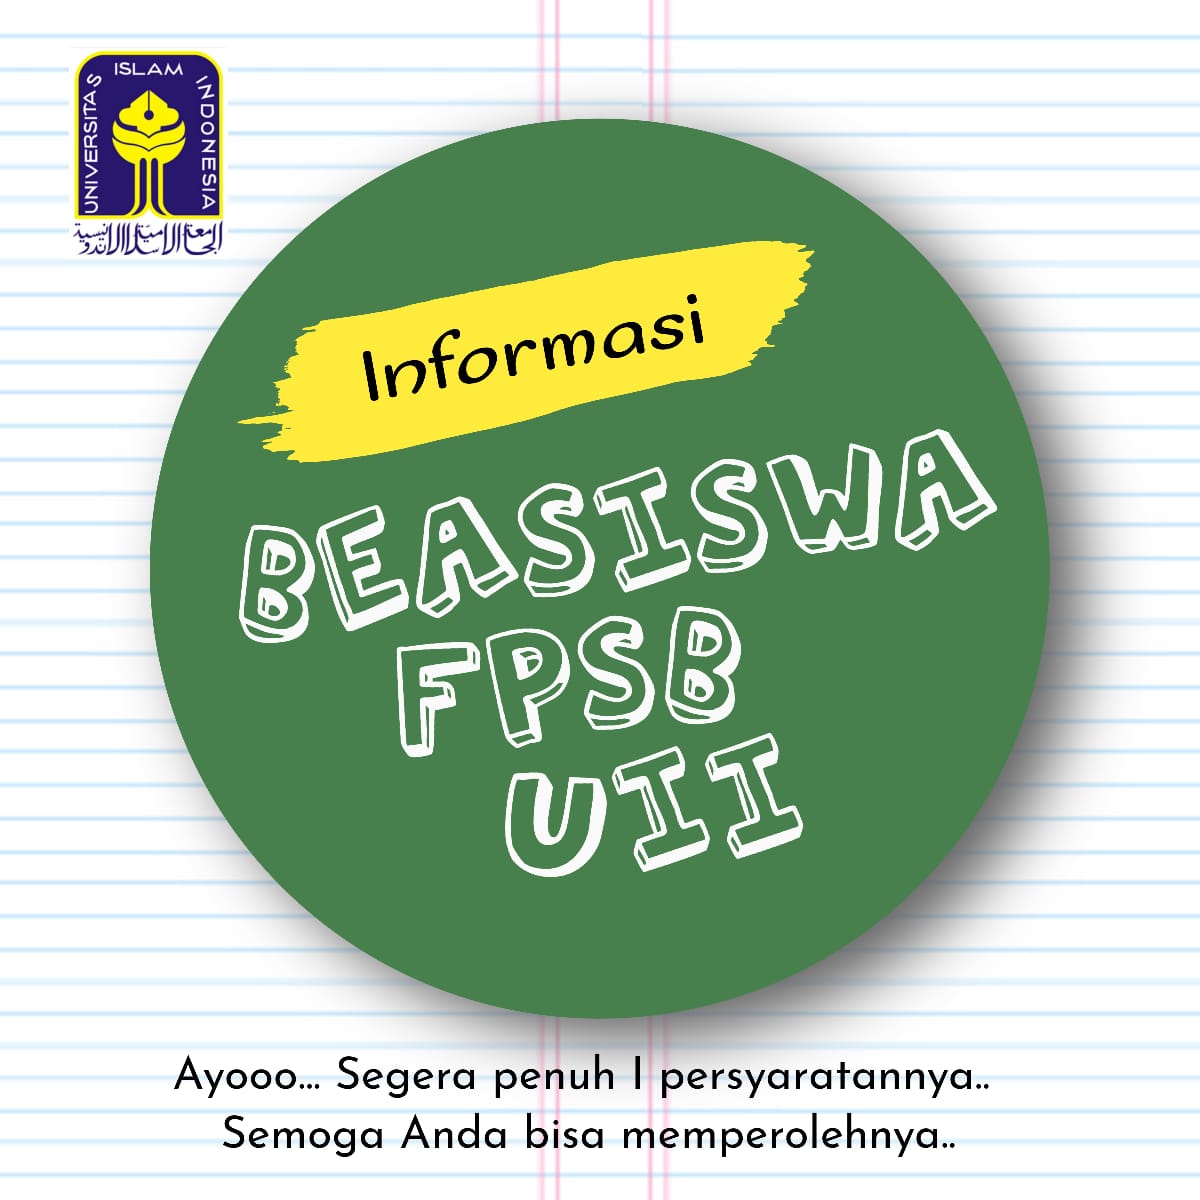 Beasiswa Fpsb Uii - Fakultas Psikologi Universitas Islam Indonesia